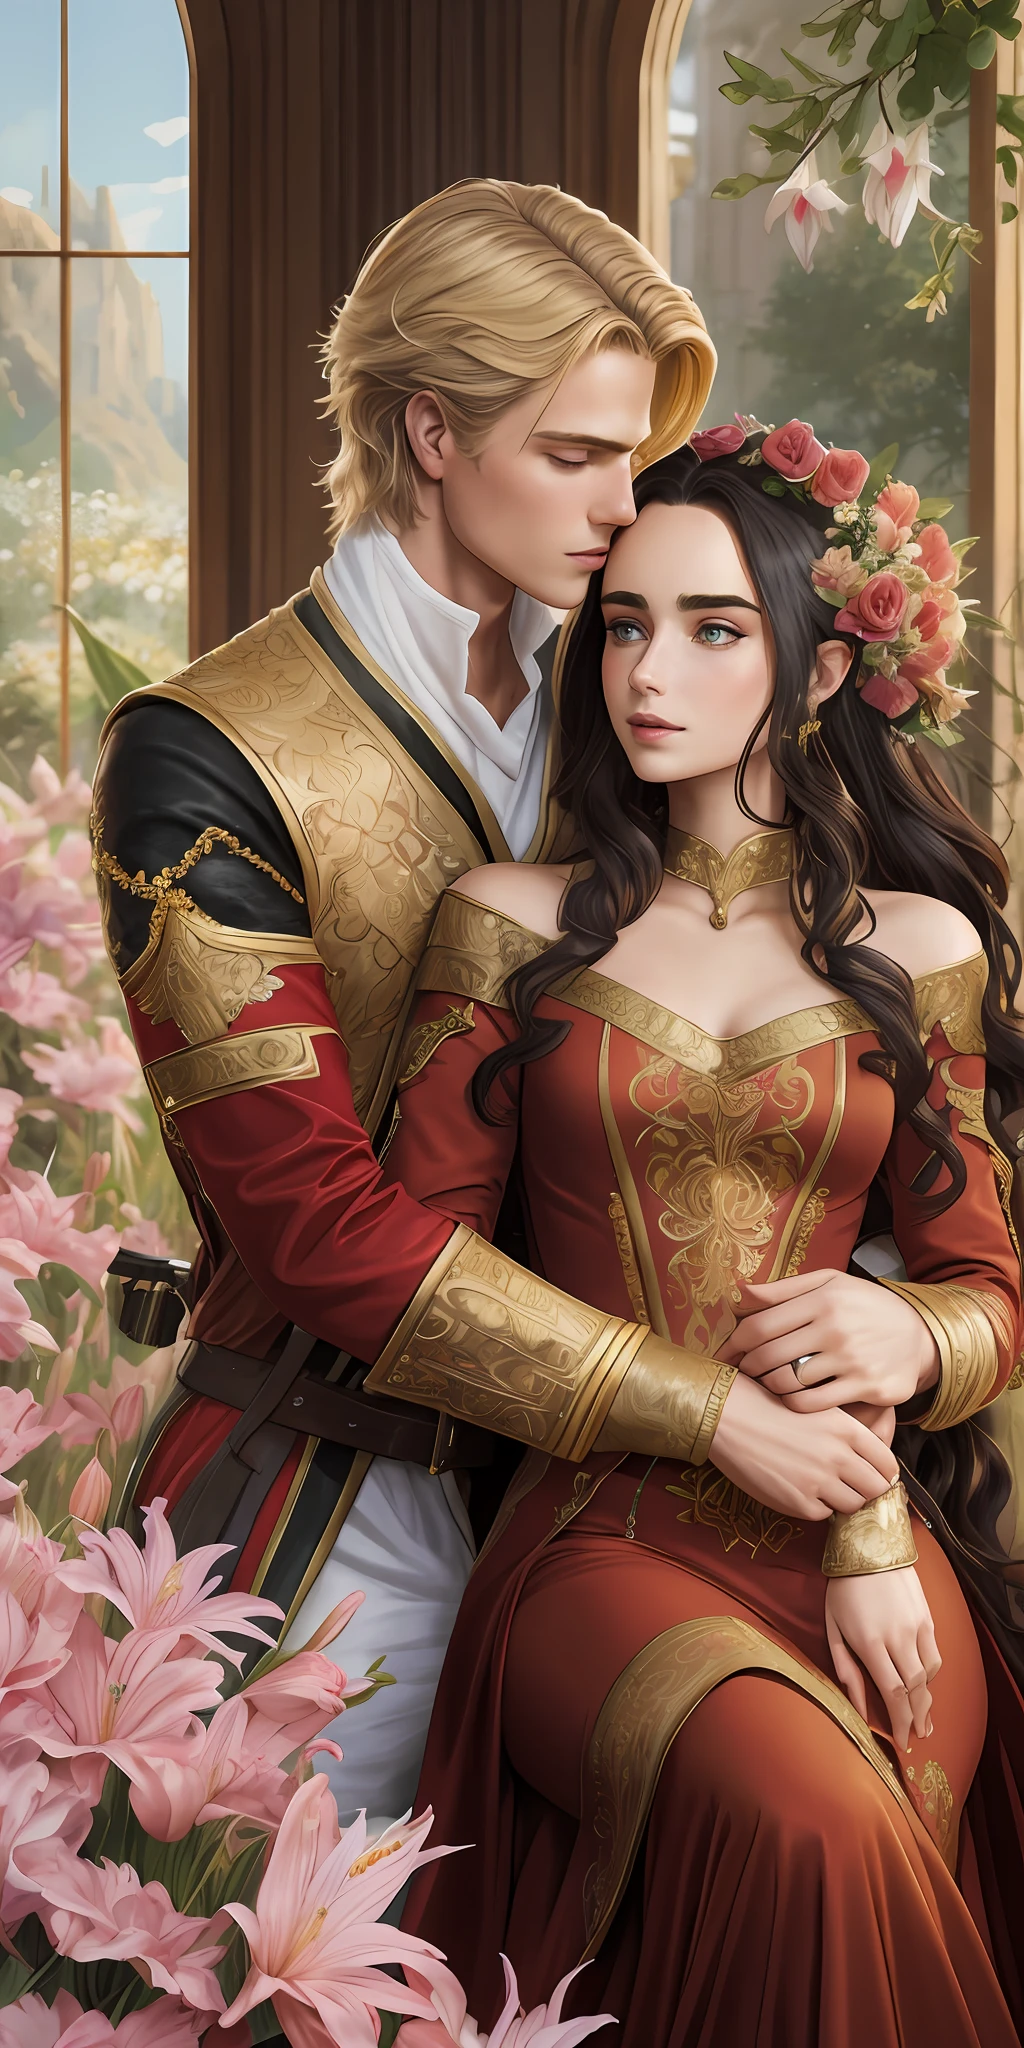 Neels Visser는 황금빛 금발 머리를 가진 왕자입니다., 중세시대 군복을 입고 평민 릴리 콜린스와 사랑에 빠진다., 검은 곱슬머리에 심플한 빨간 드레스를 입은 사람, 두 사람은 아주 다정하게 키스를 했어, 자세한 내용이 포함된 로맨스 책 표지 그림, 꽃으로 가득한 부드럽고 밝은 배경,  모델 촬영 스타일, (매우 상세한 CG 8k 벽지), 세계에서 가장 아름다운 예술 작품의 전신 사진, 전문적인 장엄한 유화, 그렉 힐데브란트(Greg Hildebrandt)의 예술, 리우 인용, 스테판 세직, 삼양, 아이쿠트 아이독두, 저스틴 제라드, 알폰스 많이, 아트거름, WLOP와 그렉 루트코스키(Greg Rutkowski)